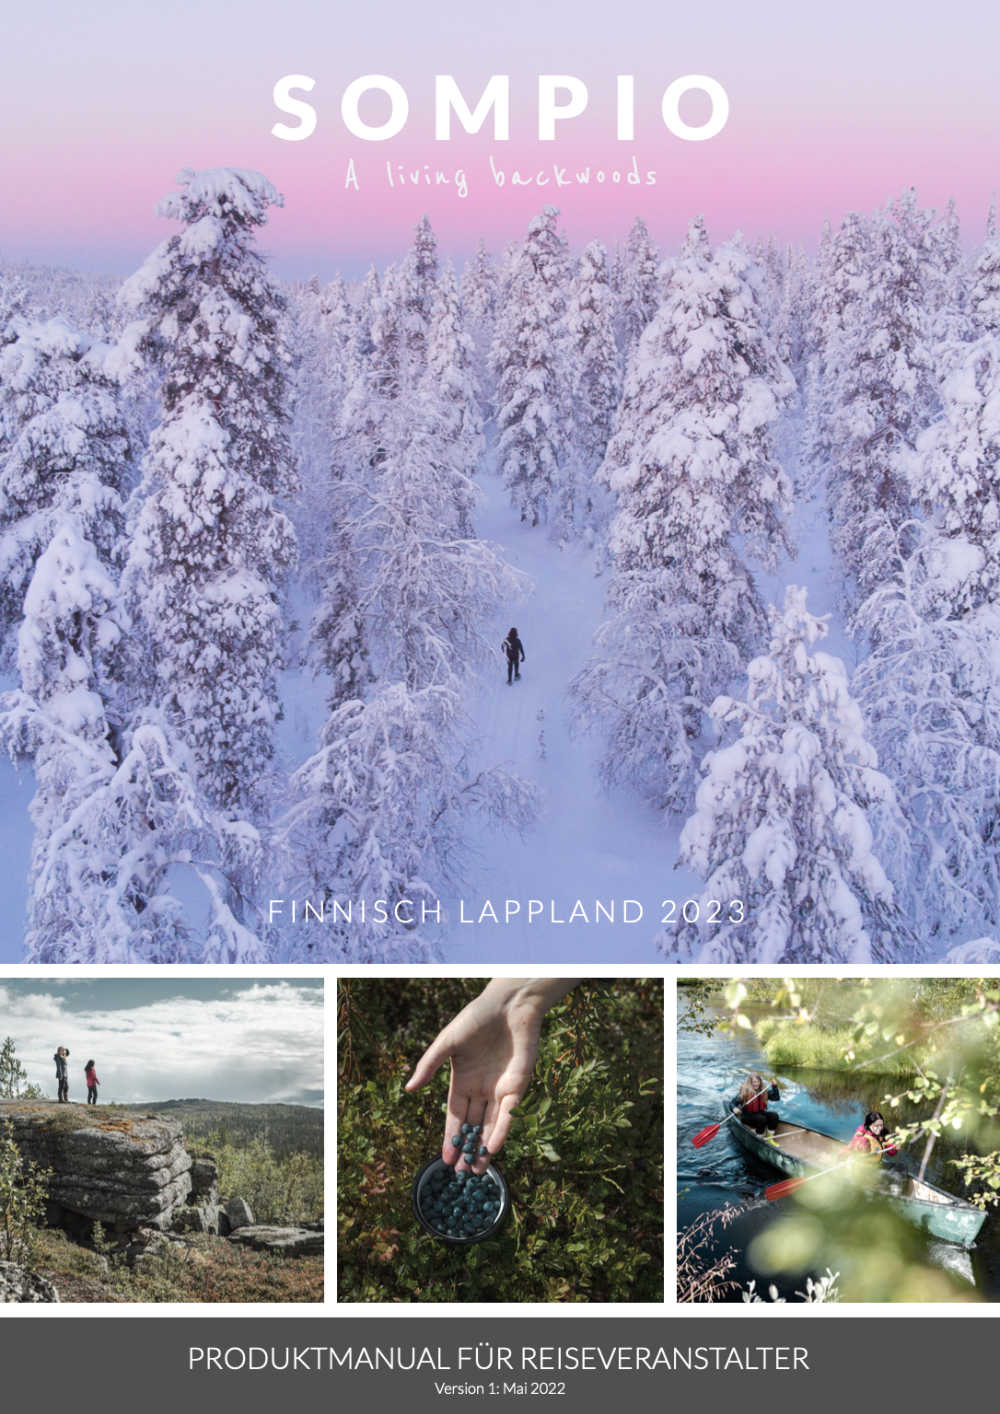 Produktmanual-Visit Sompio-Finnland-2023-Cover